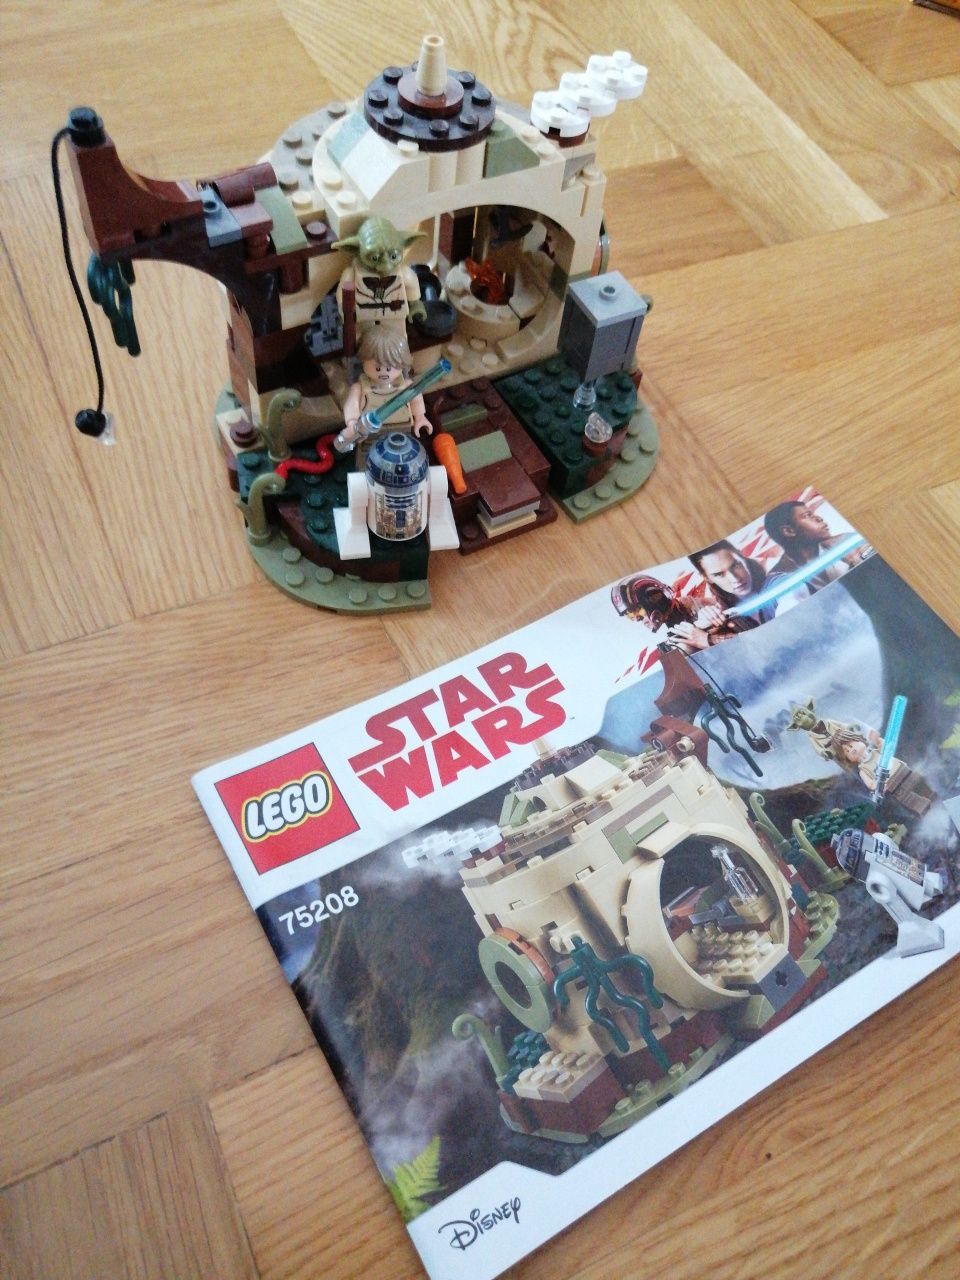 LEGO Star Wars 75208 Chatka Mistrza Yody